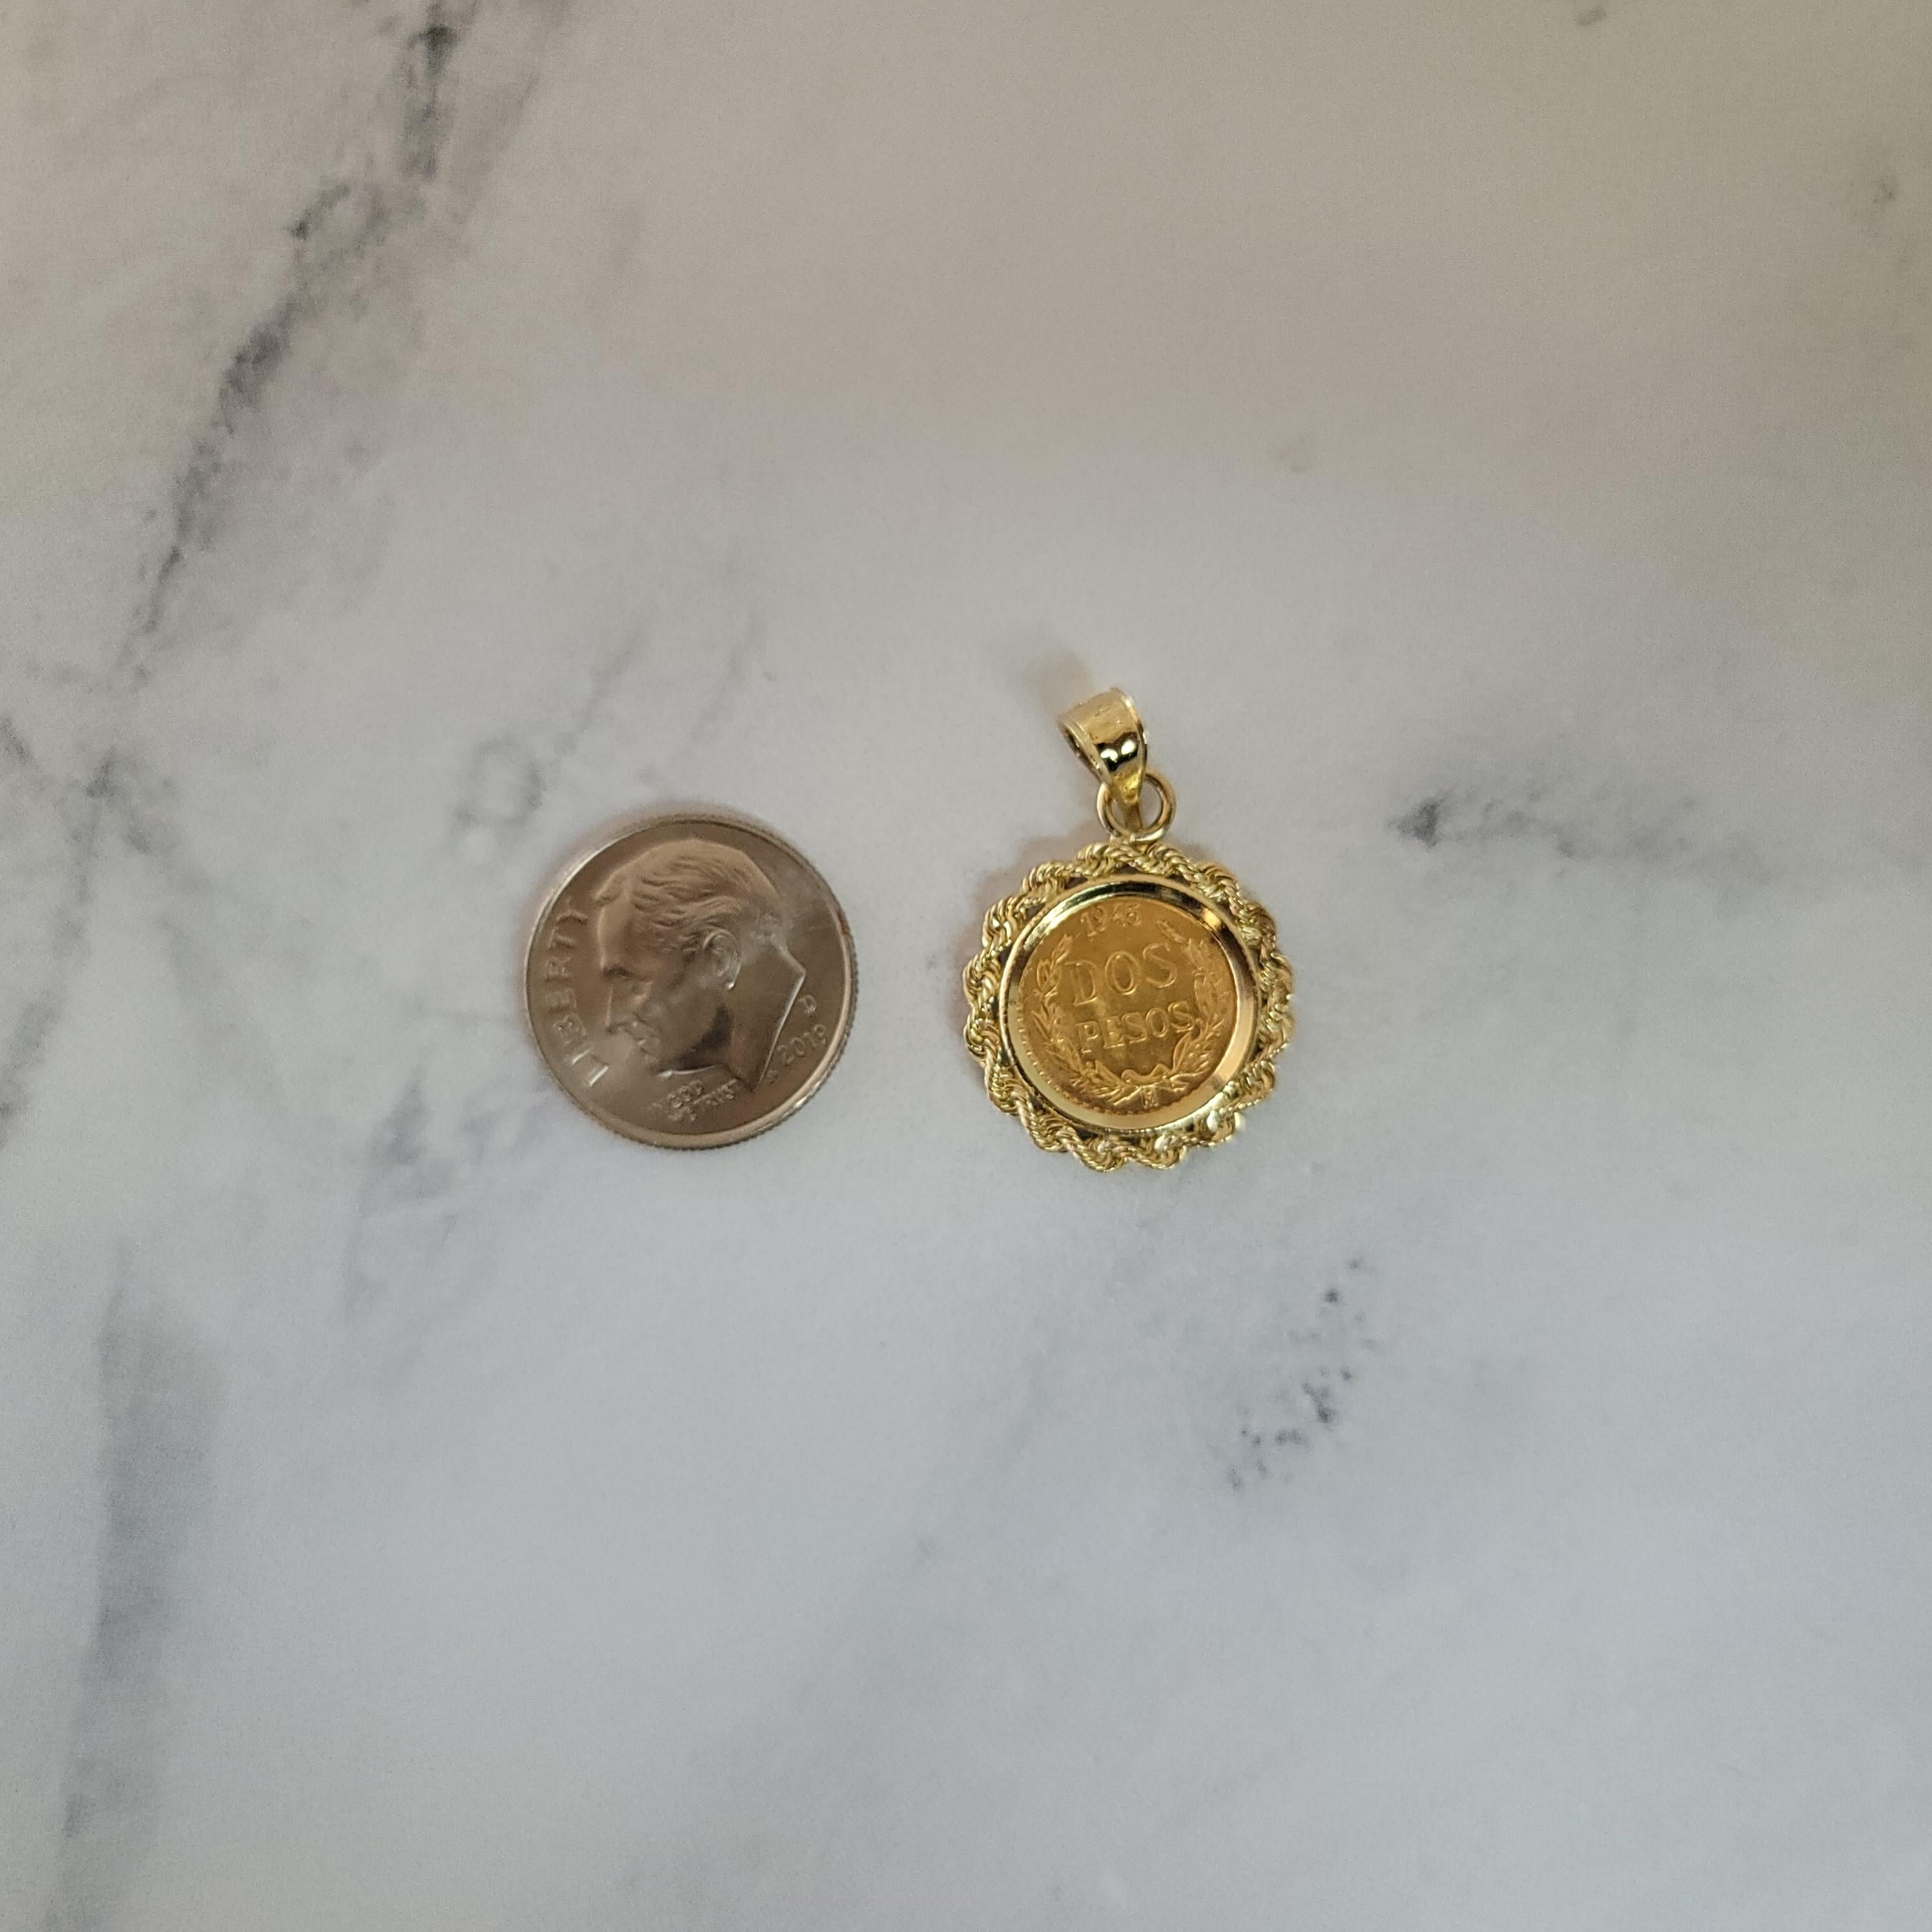 1945 dos pesos gold coin necklace